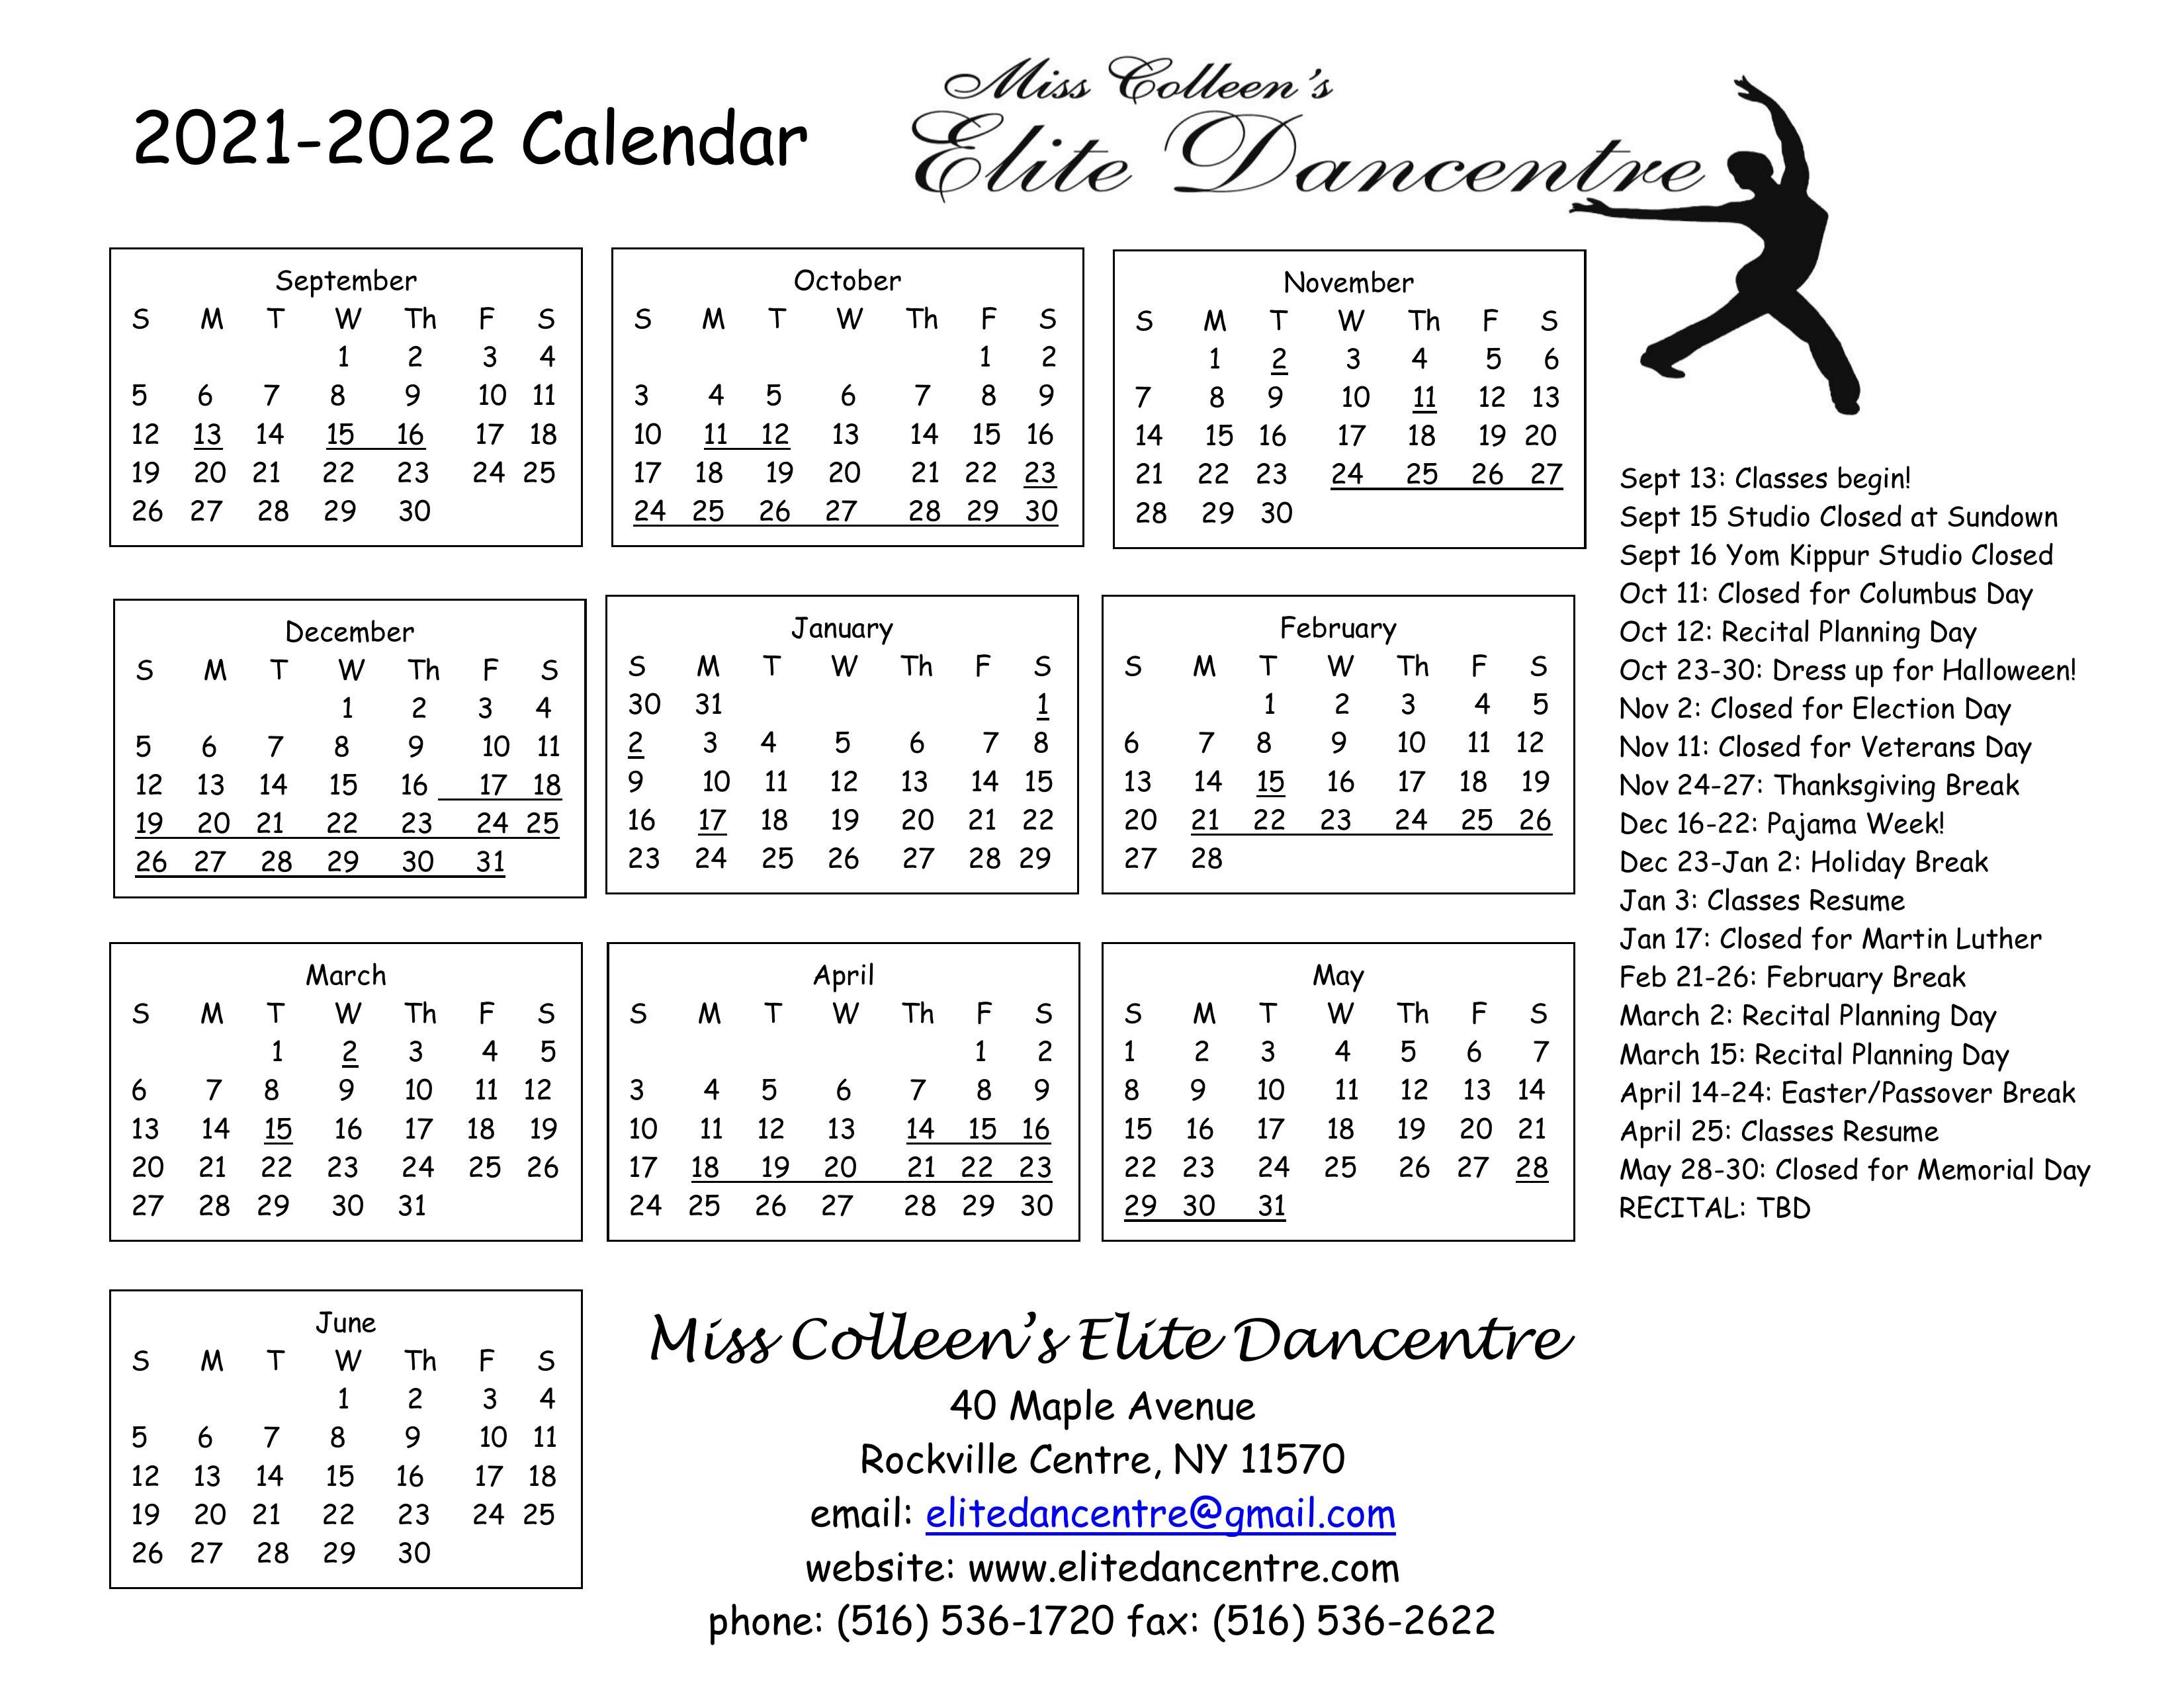 edc calendar 2021 2022.jpg